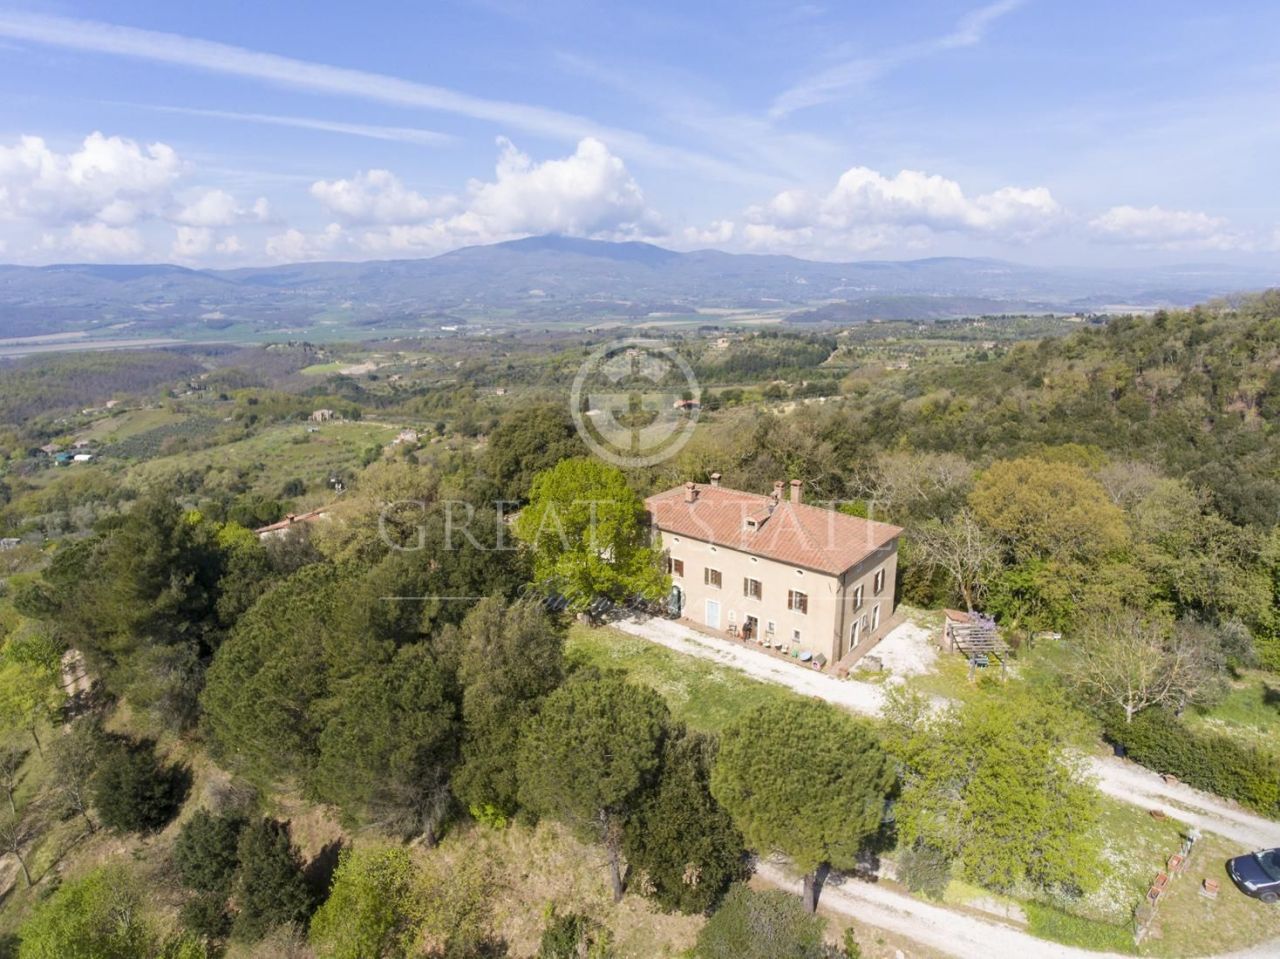 House in Citta della Pieve, Italy, 593.25 sq.m - picture 1